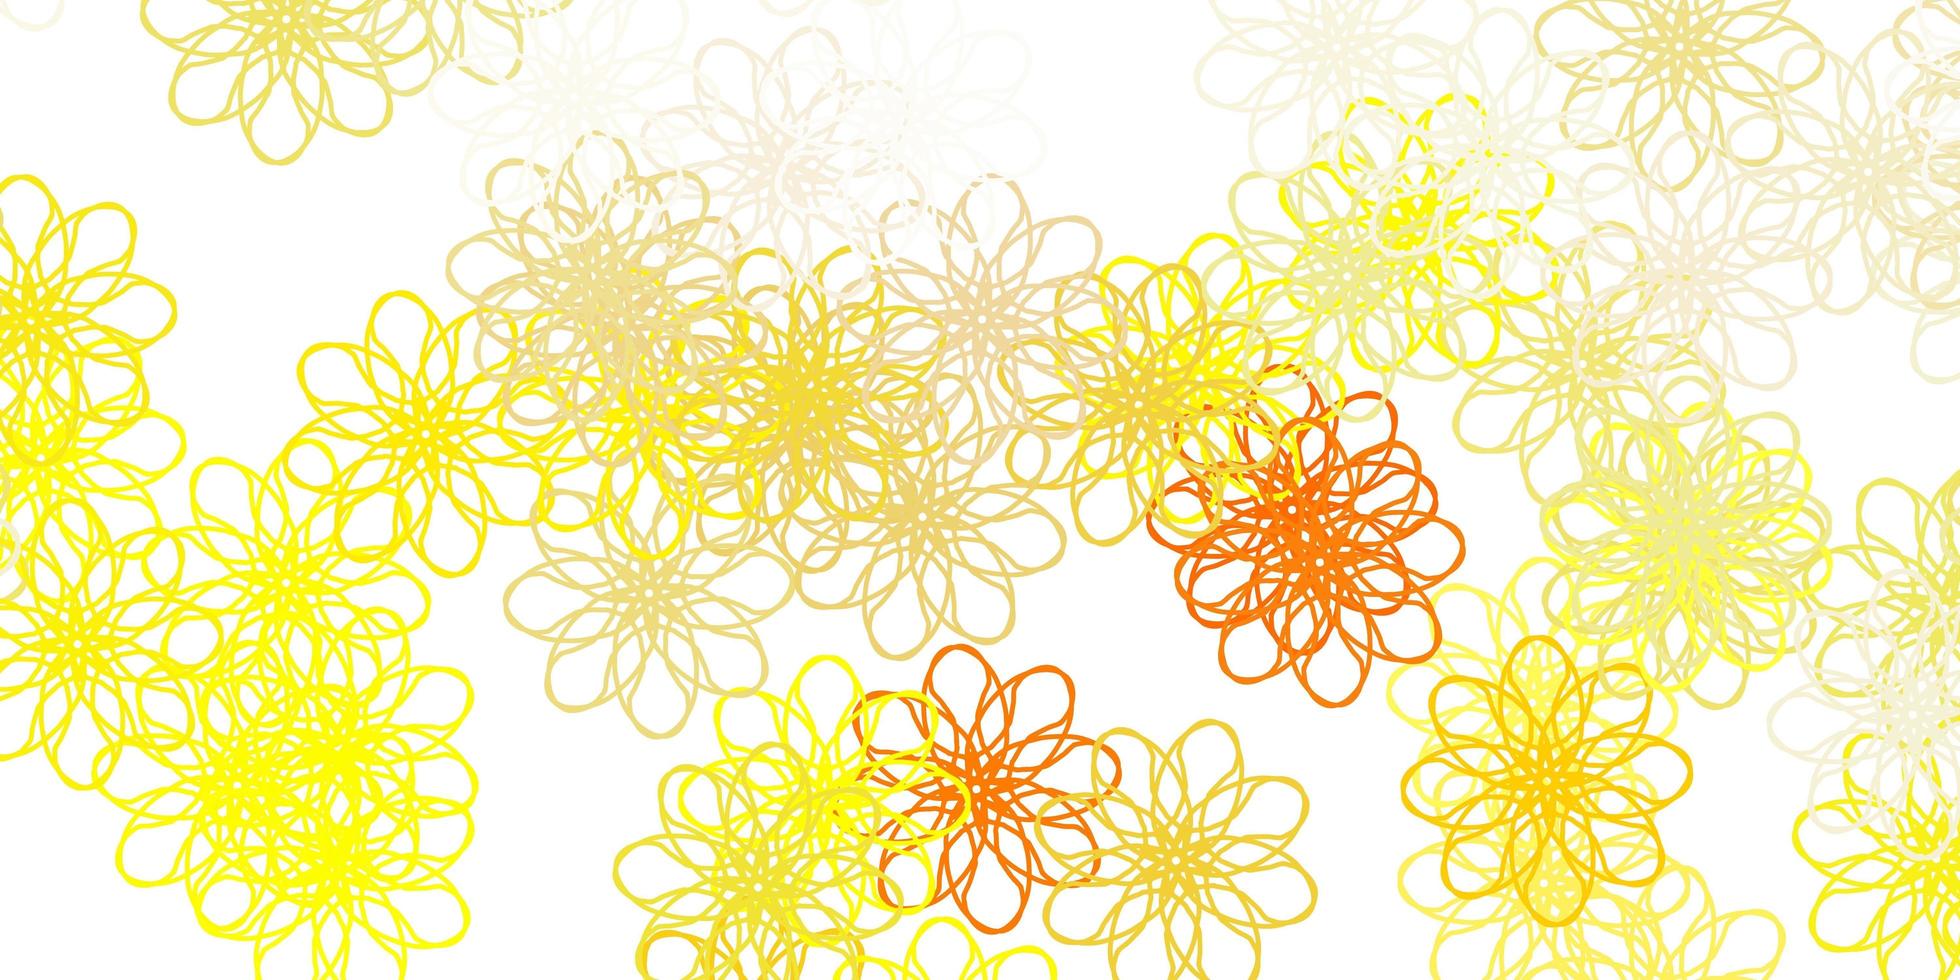 fond de doodle vecteur orange clair avec des fleurs.